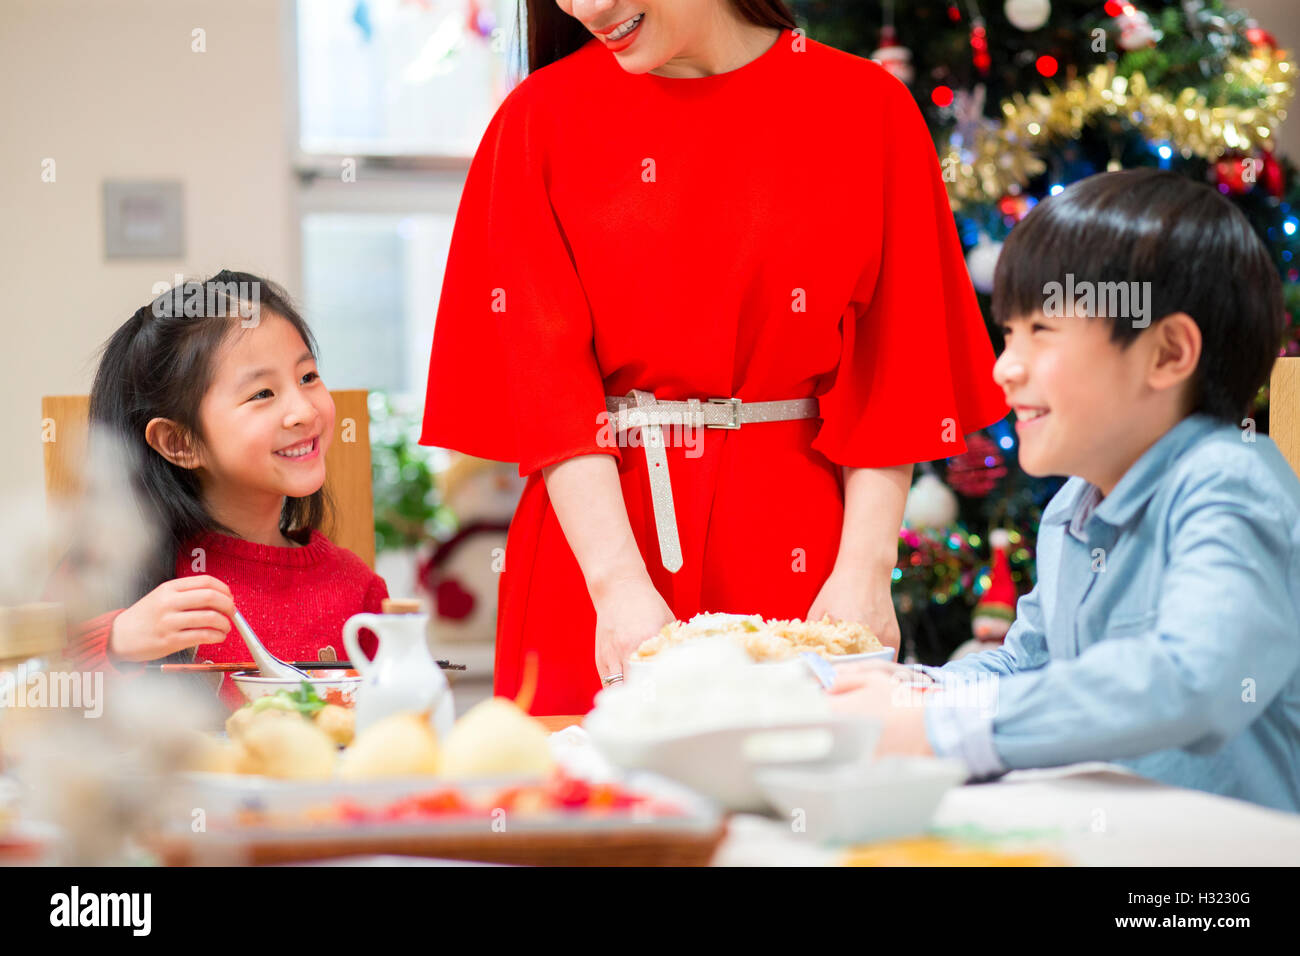 Famiglia cinese avente la cena di Natale. La madre è in piedi, imbutitura di cibo per tutti. I bambini sono a ridere insieme. Foto Stock